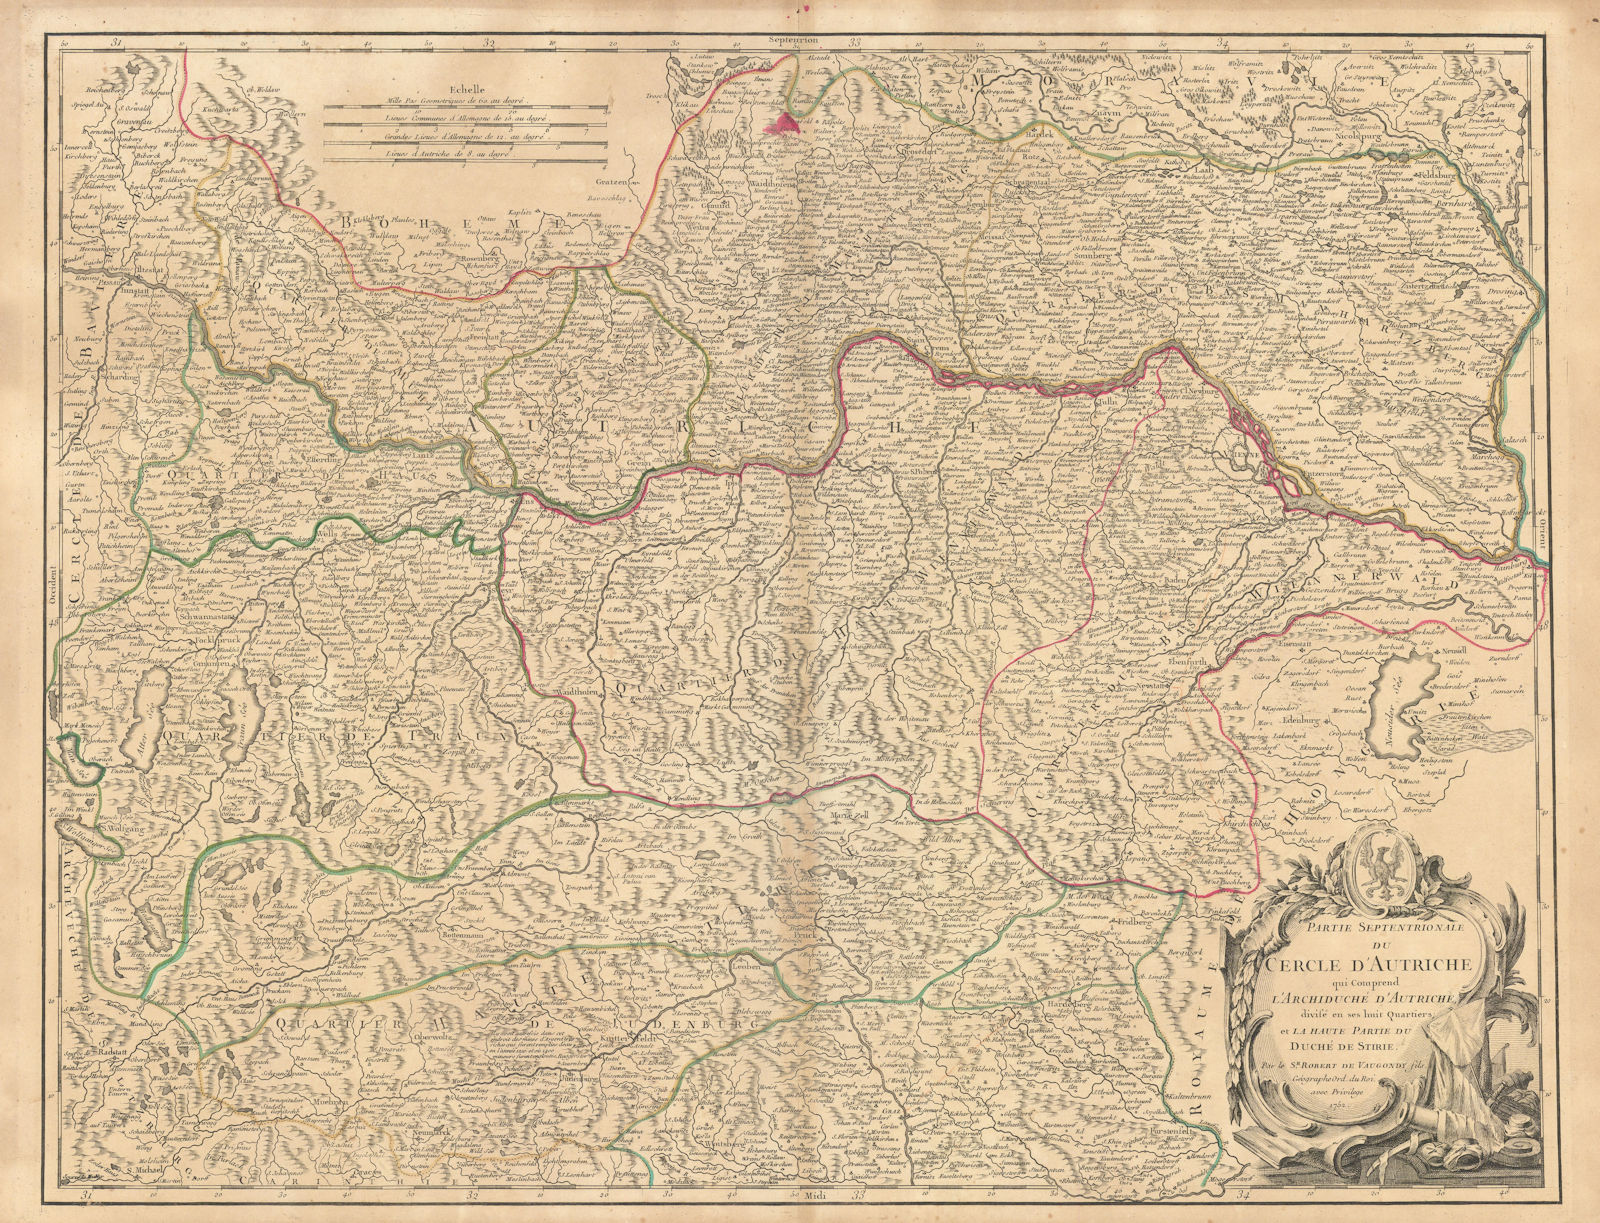 Partie Septentrionale du Cercle d'Autriche Upper/Lower Austria VAUGONDY 1752 map